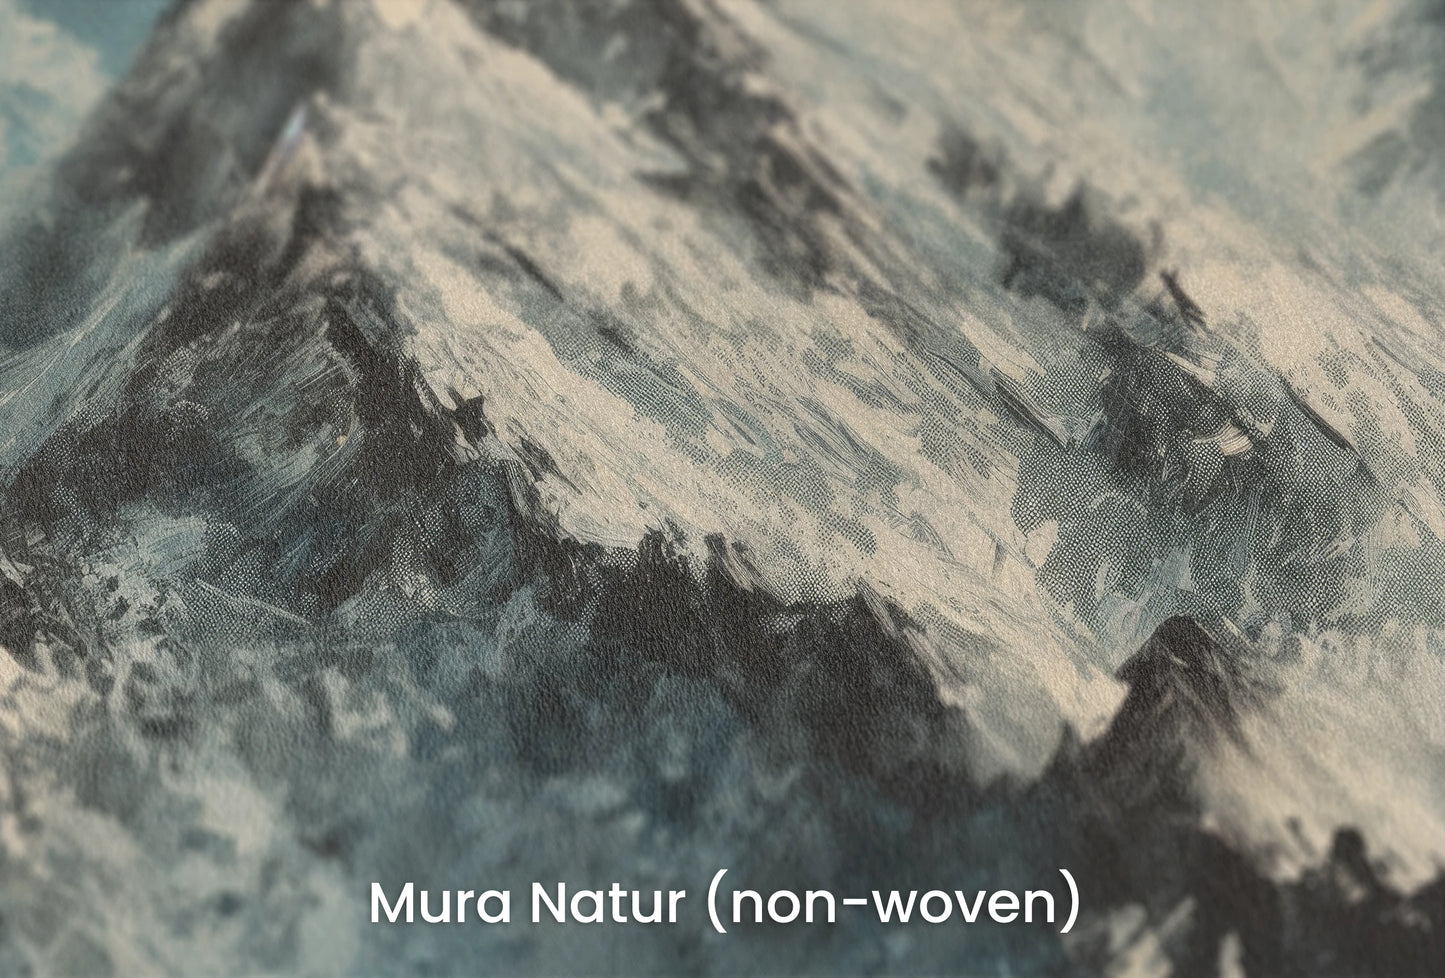 Zbliżenie na artystyczną fototapetę o nazwie Misty Mountain Mystery na podłożu Mura Natur (non-woven) - naturalne i ekologiczne podłoże.